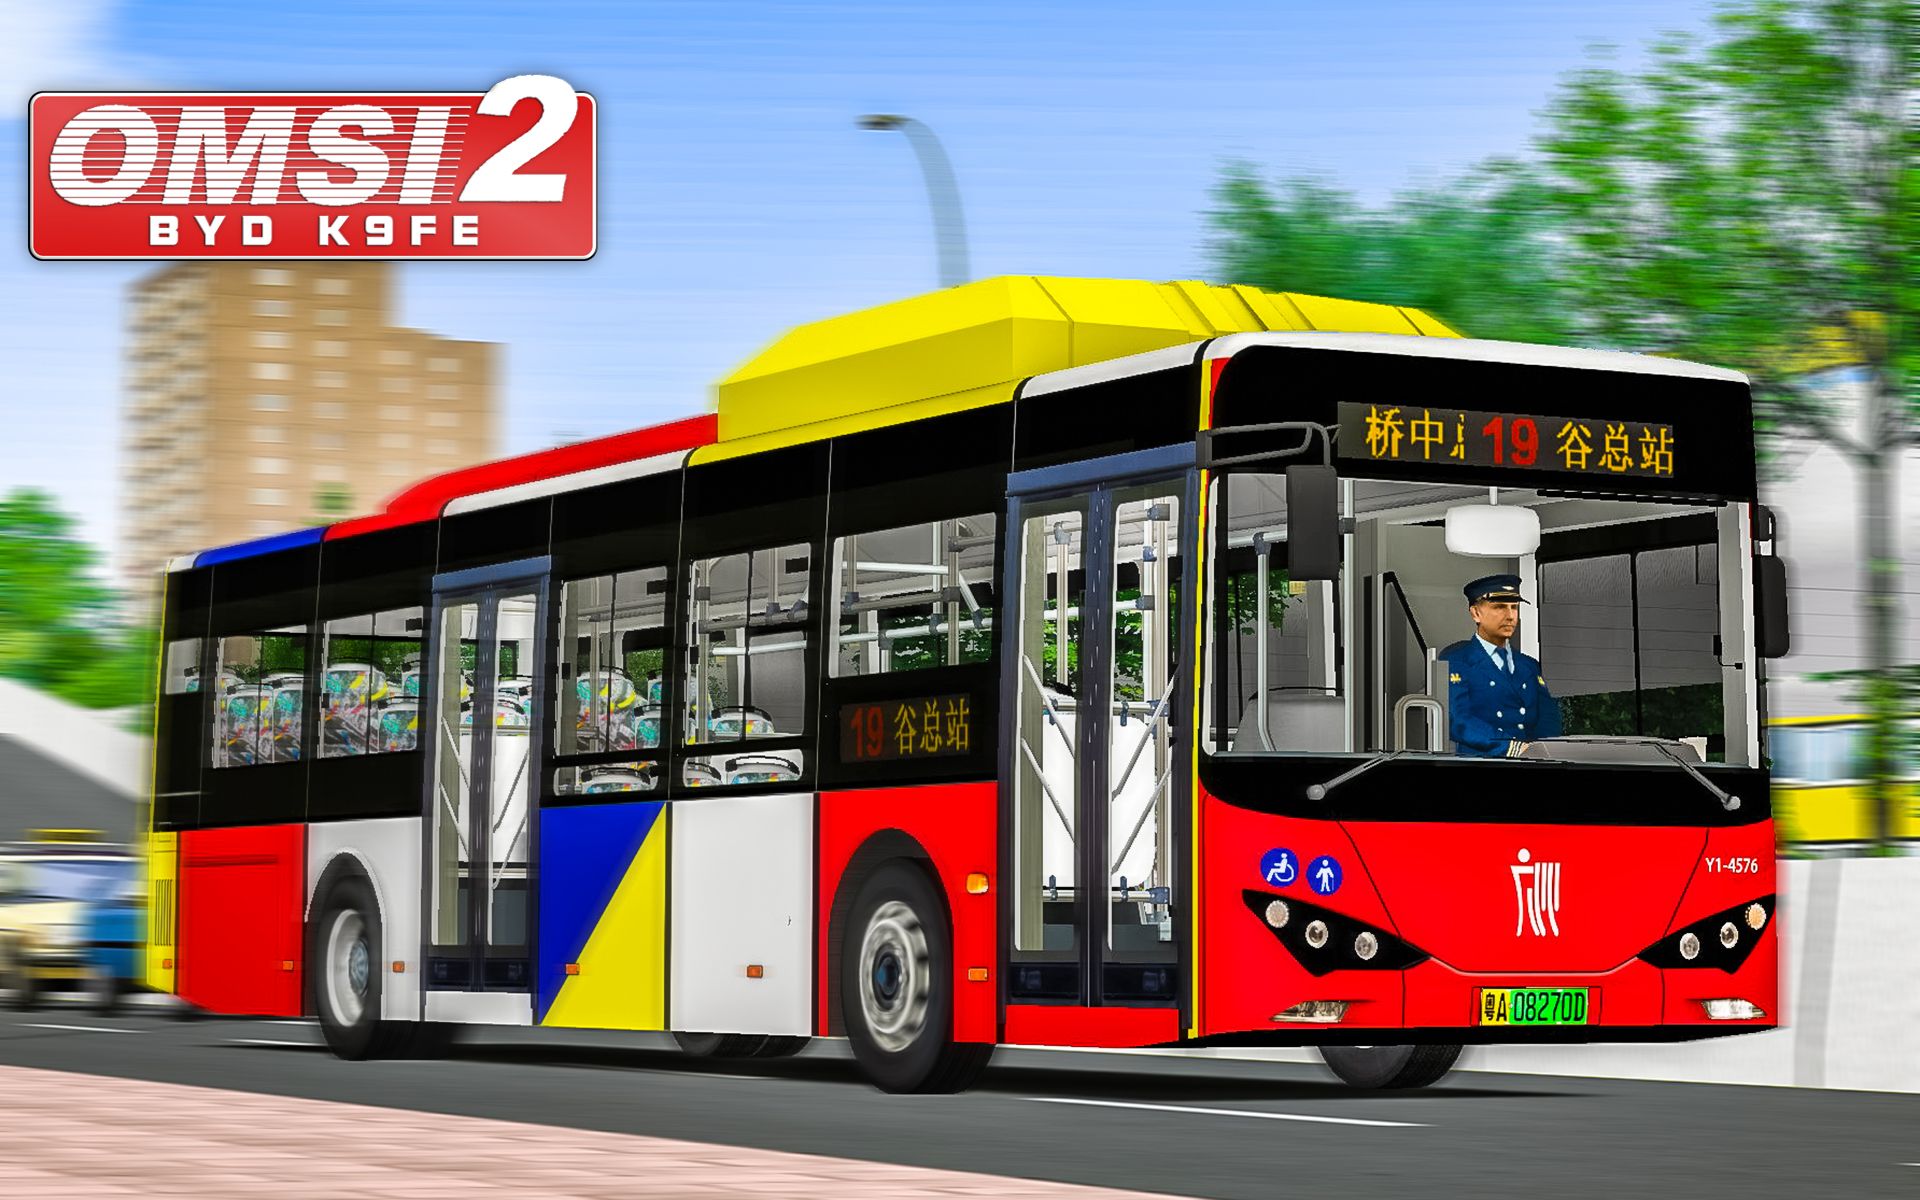 巴士模拟2 比亚迪K9FE #1：新车试玩 驾驶比亚迪K9FE于广佛地图19路 | OMSI 2 广佛市 19(1/2) | 4K60